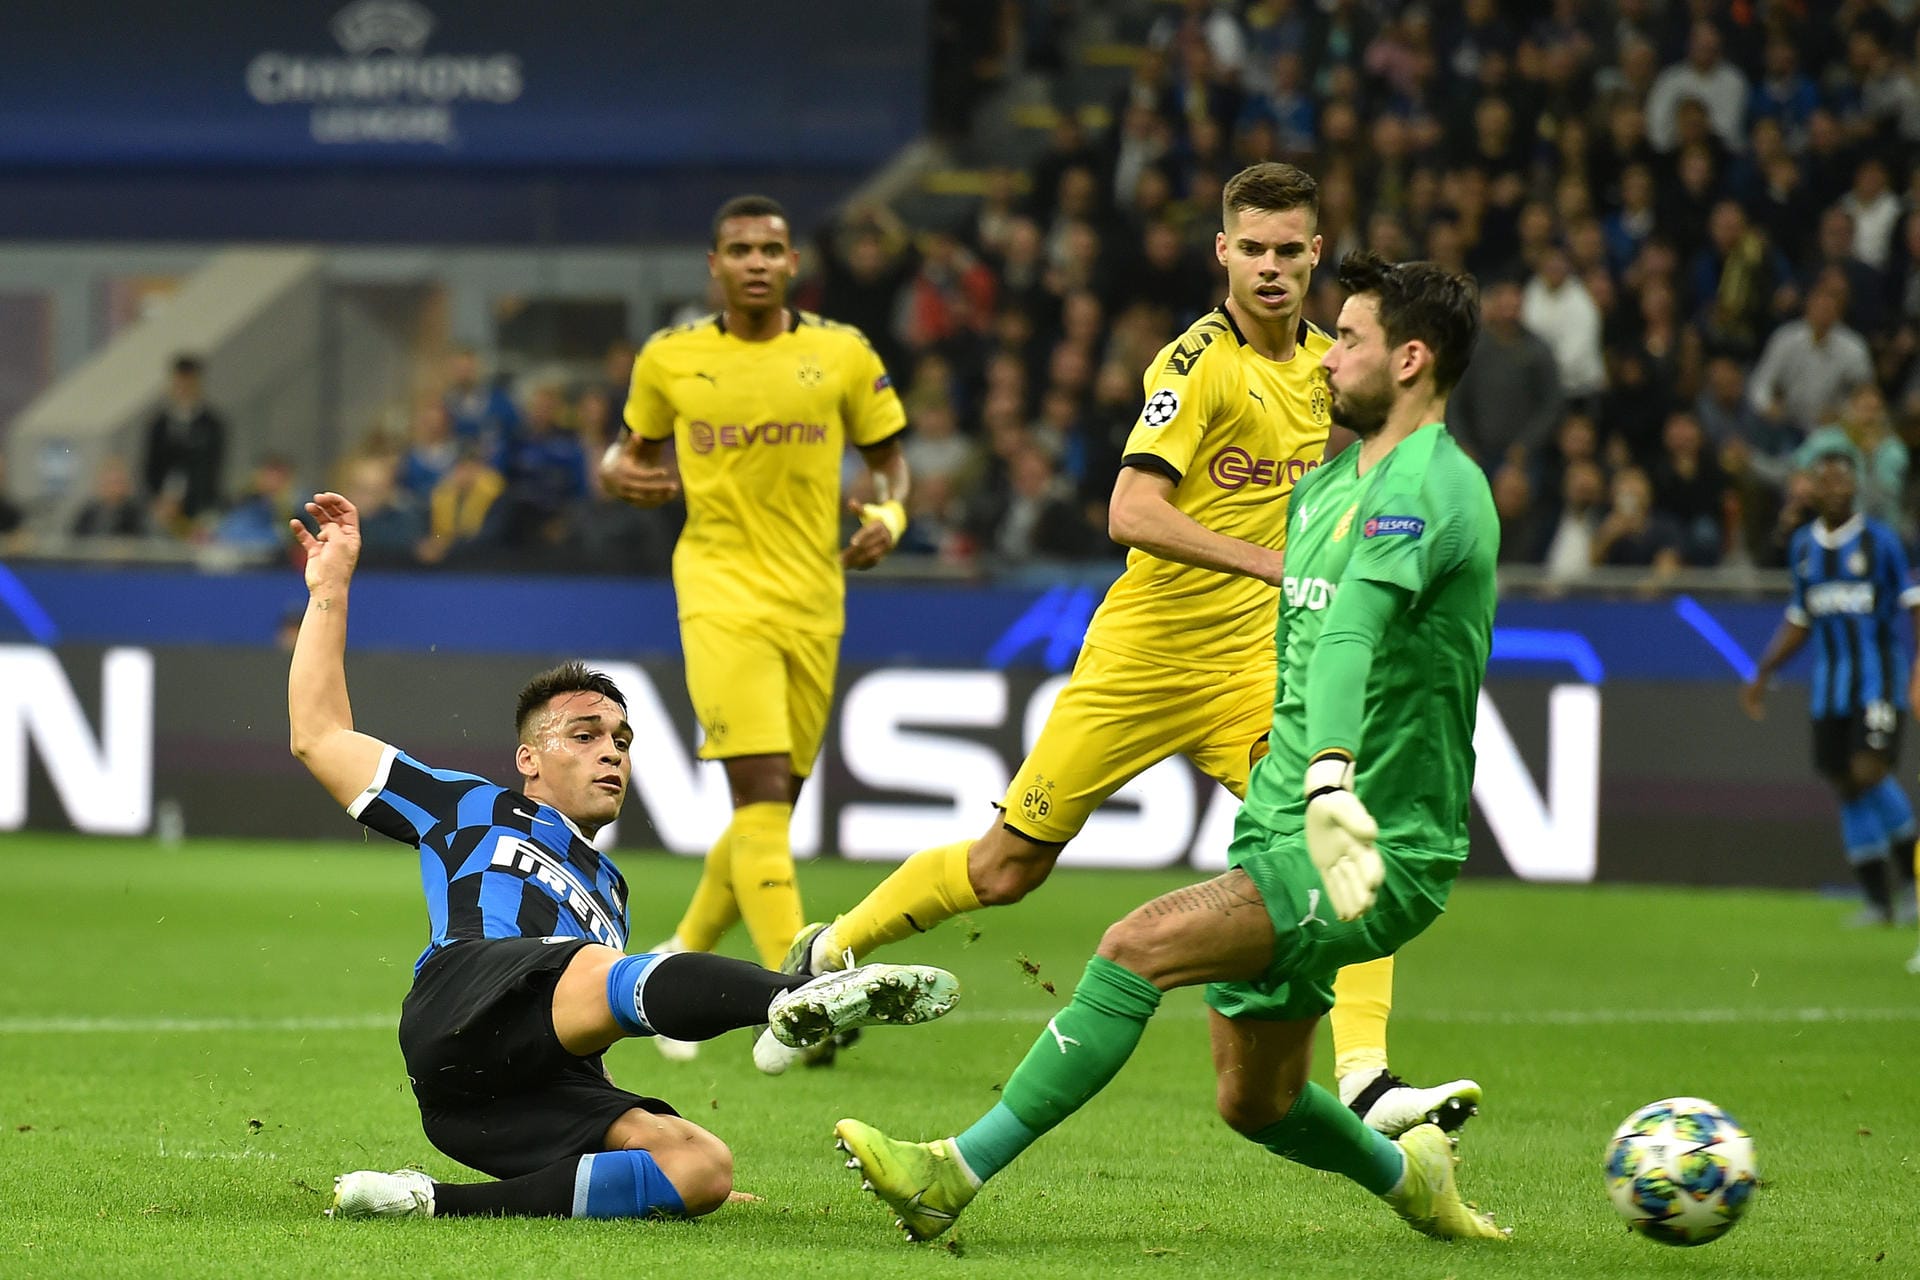 Am dritten Champions-League-Spieltag unterlagen die Dortmunder bei Inter Mailand mit 0:2. Insgesamt blieb die Dortmunder Offensivreihe ohne Reus und Alcacer ungefährlich und konnte sich kaum nennenswerte Torchancen erarbeiten. Die BVB-Spieler in der Einzelkritik.